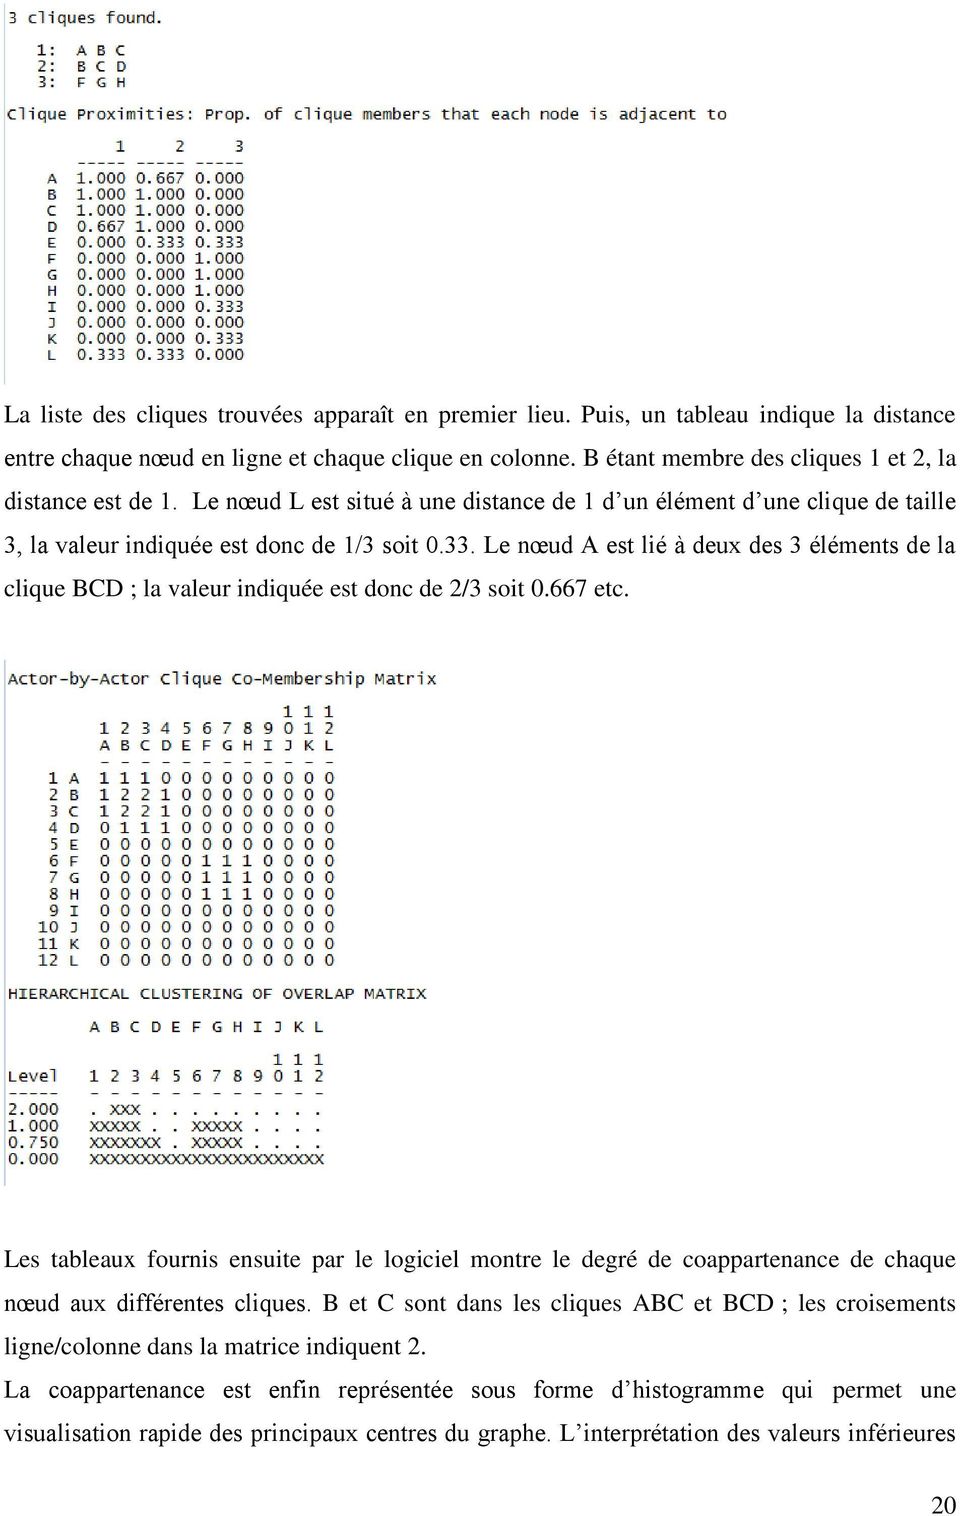 Le nœud A est lié à deux des 3 éléments de la clique BCD ; la valeur indiquée est donc de 2/3 soit 0.667 etc.